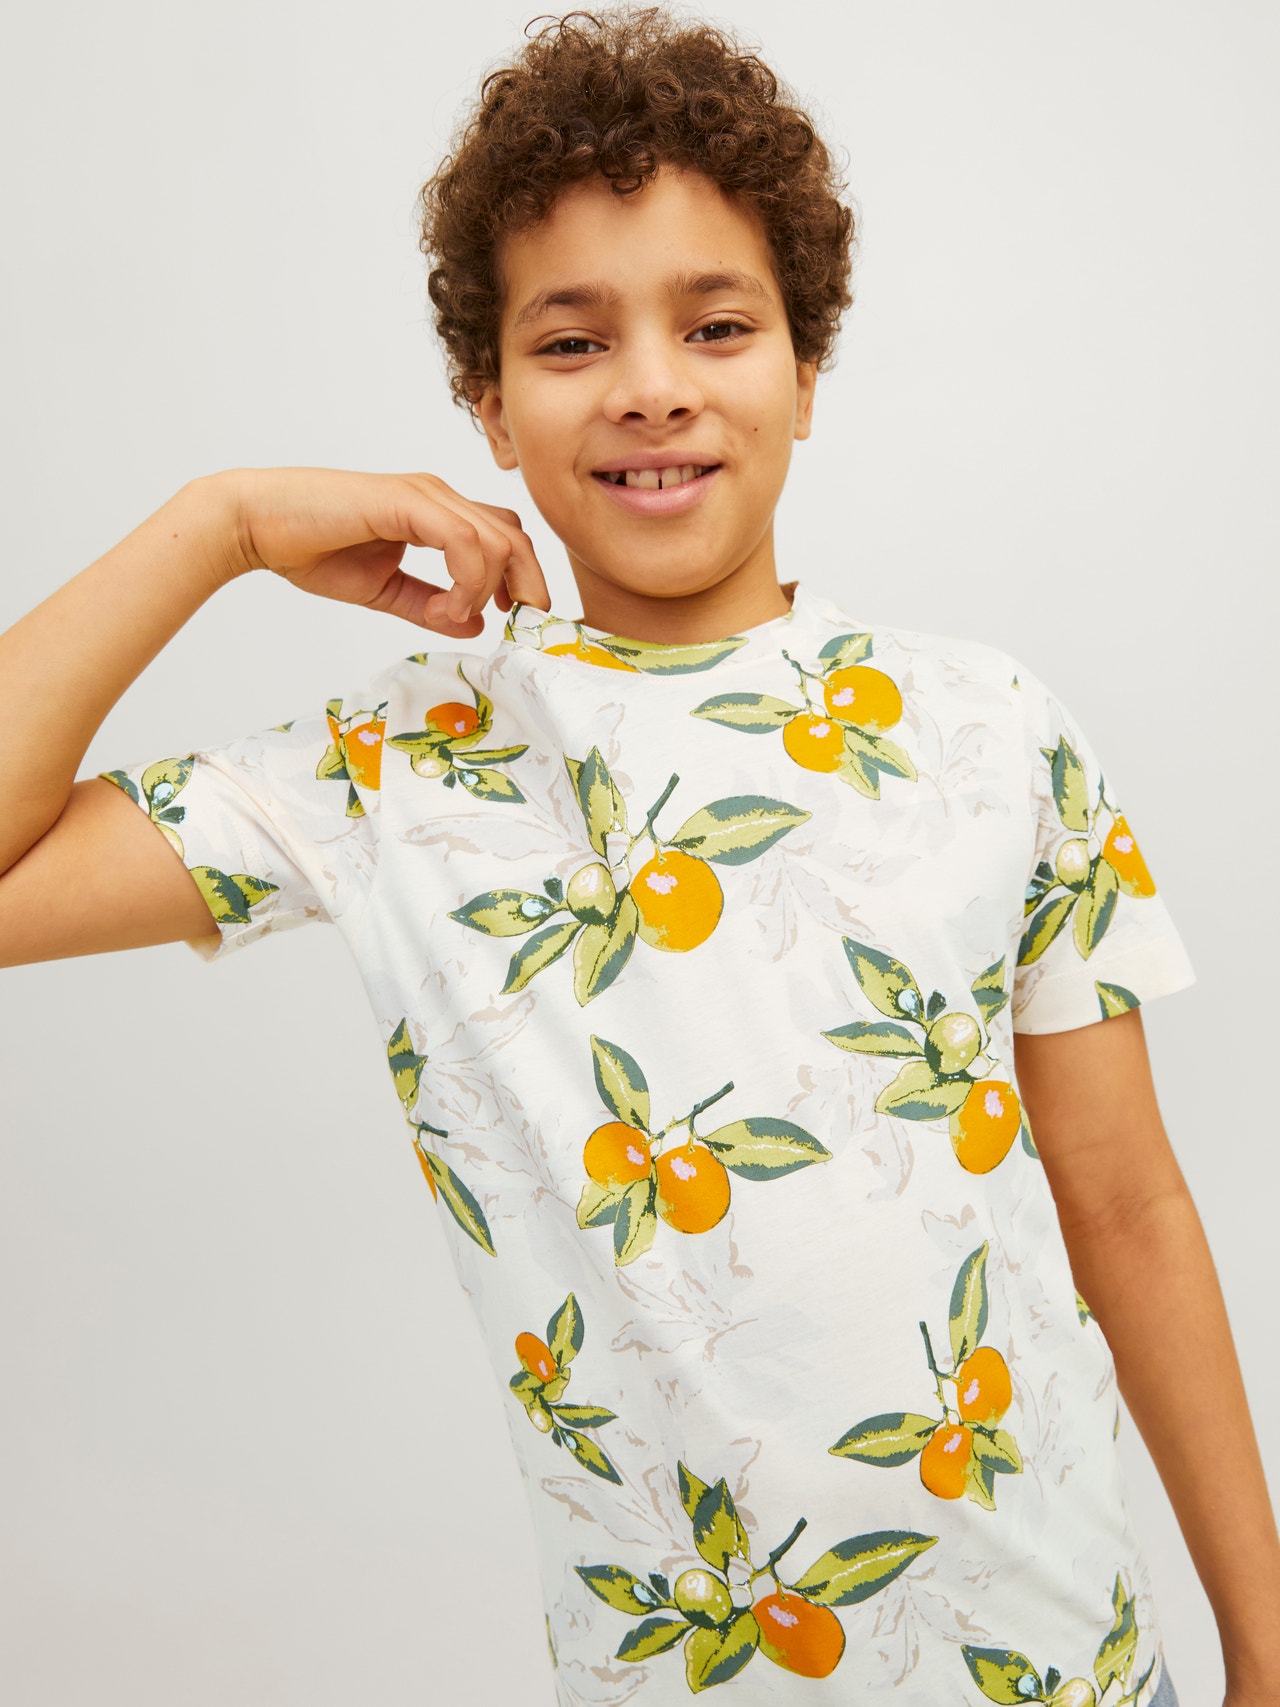 Jack & Jones All Over Print T-shirt For boys -Buttercream - 12254029